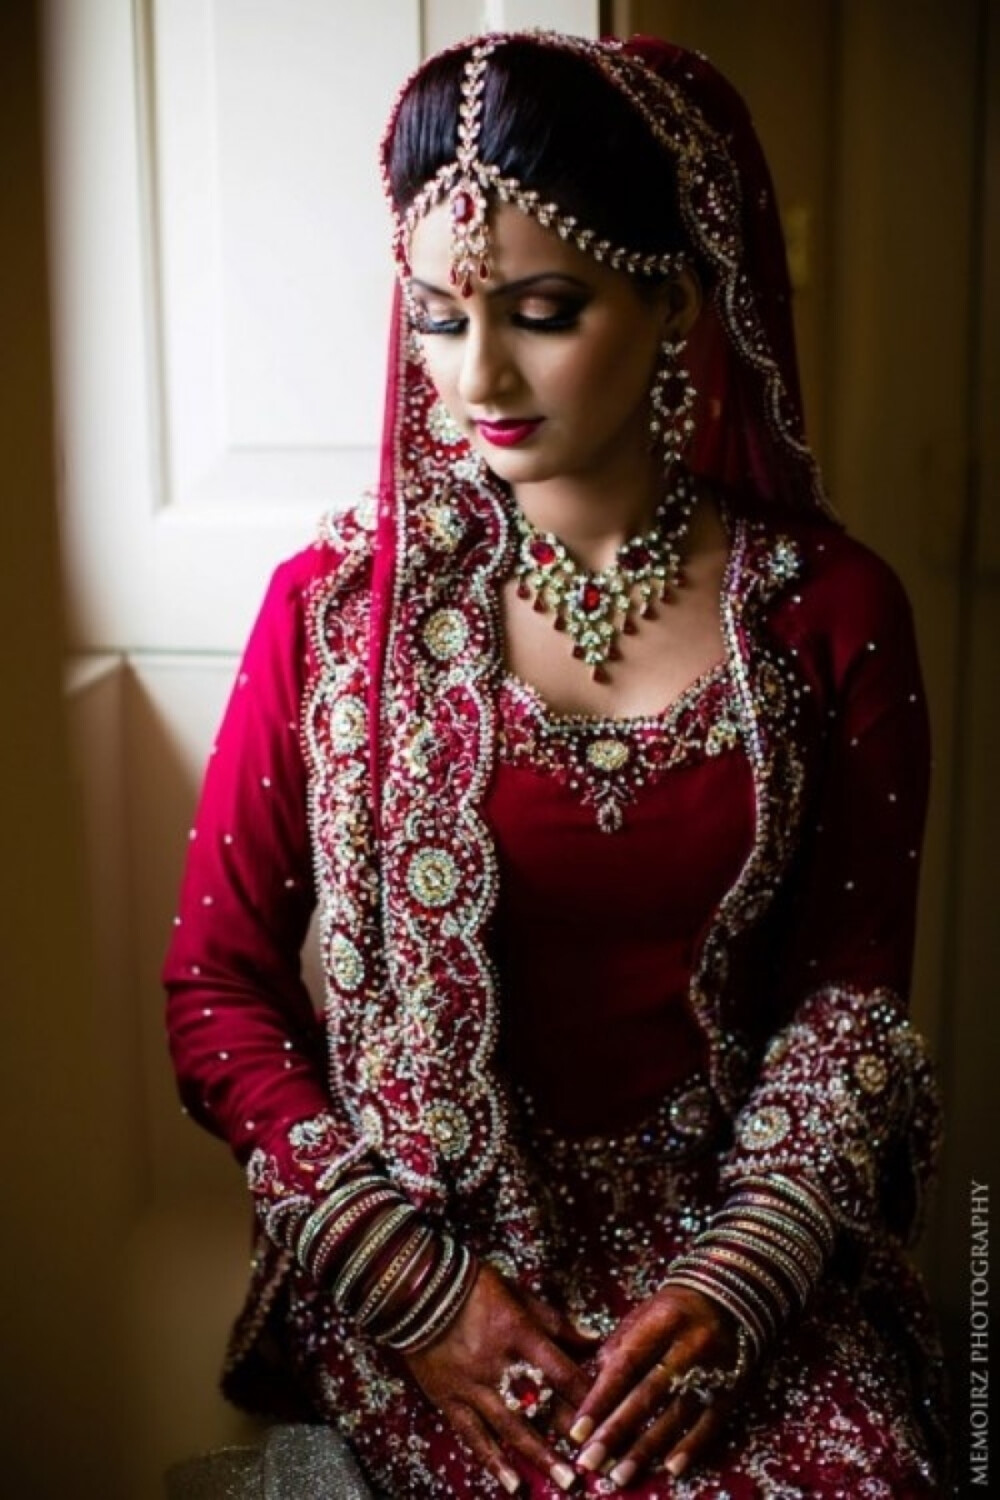 印度新娘,印度美女,印度服饰